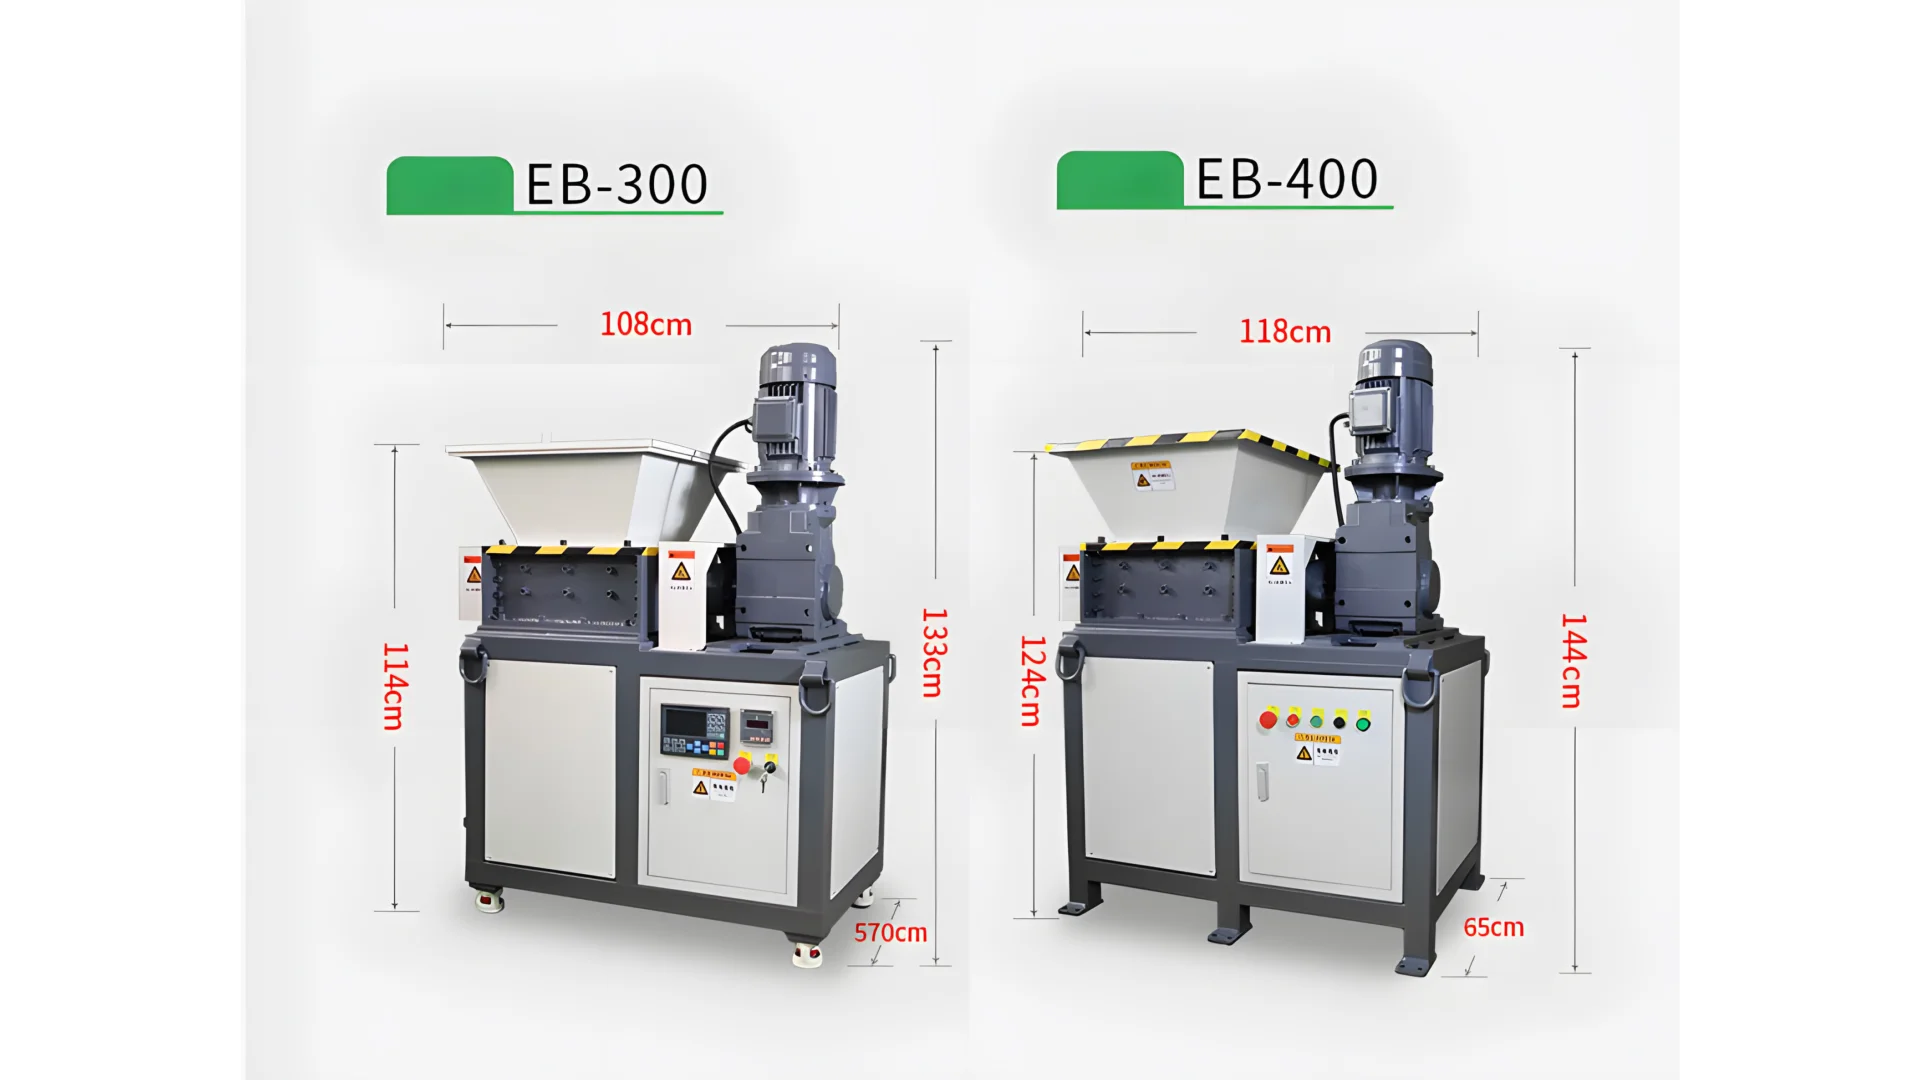 EB-300 ve EB-400 etiketli iki sabit disk parçalayıcı modeli vardır. Her iki model de boyutlarıyla birlikte gösterilmektedir. EB-300 modeli için: 108 cm genişliğinde, 114 cm yüksekliğinde ve 570 cm uzunluğundadır. EB-400 modeli için: 118 cm genişliğinde, 124 cm yüksekliğinde ve 65 cm uzunluğundadır. Bu boyutlar, her bir parçalayıcı modelinin fiziksel boyutu hakkında bir fikir verir ve bu, kurulum için gerekli alan gereksinimlerinin belirlenmesinde yararlı olabilir. Resim aynı zamanda iki model arasındaki farklı tasarım öğelerini ve kapasiteleri de gösteriyor; bu da muhtemelen farklı performans düzeyleri veya kullanım senaryoları öneriyor. Bu modellerle ilgili daha spesifik ayrıntılara ihtiyacınız varsa veya başka sorularınız varsa sormaya çekinmeyin!